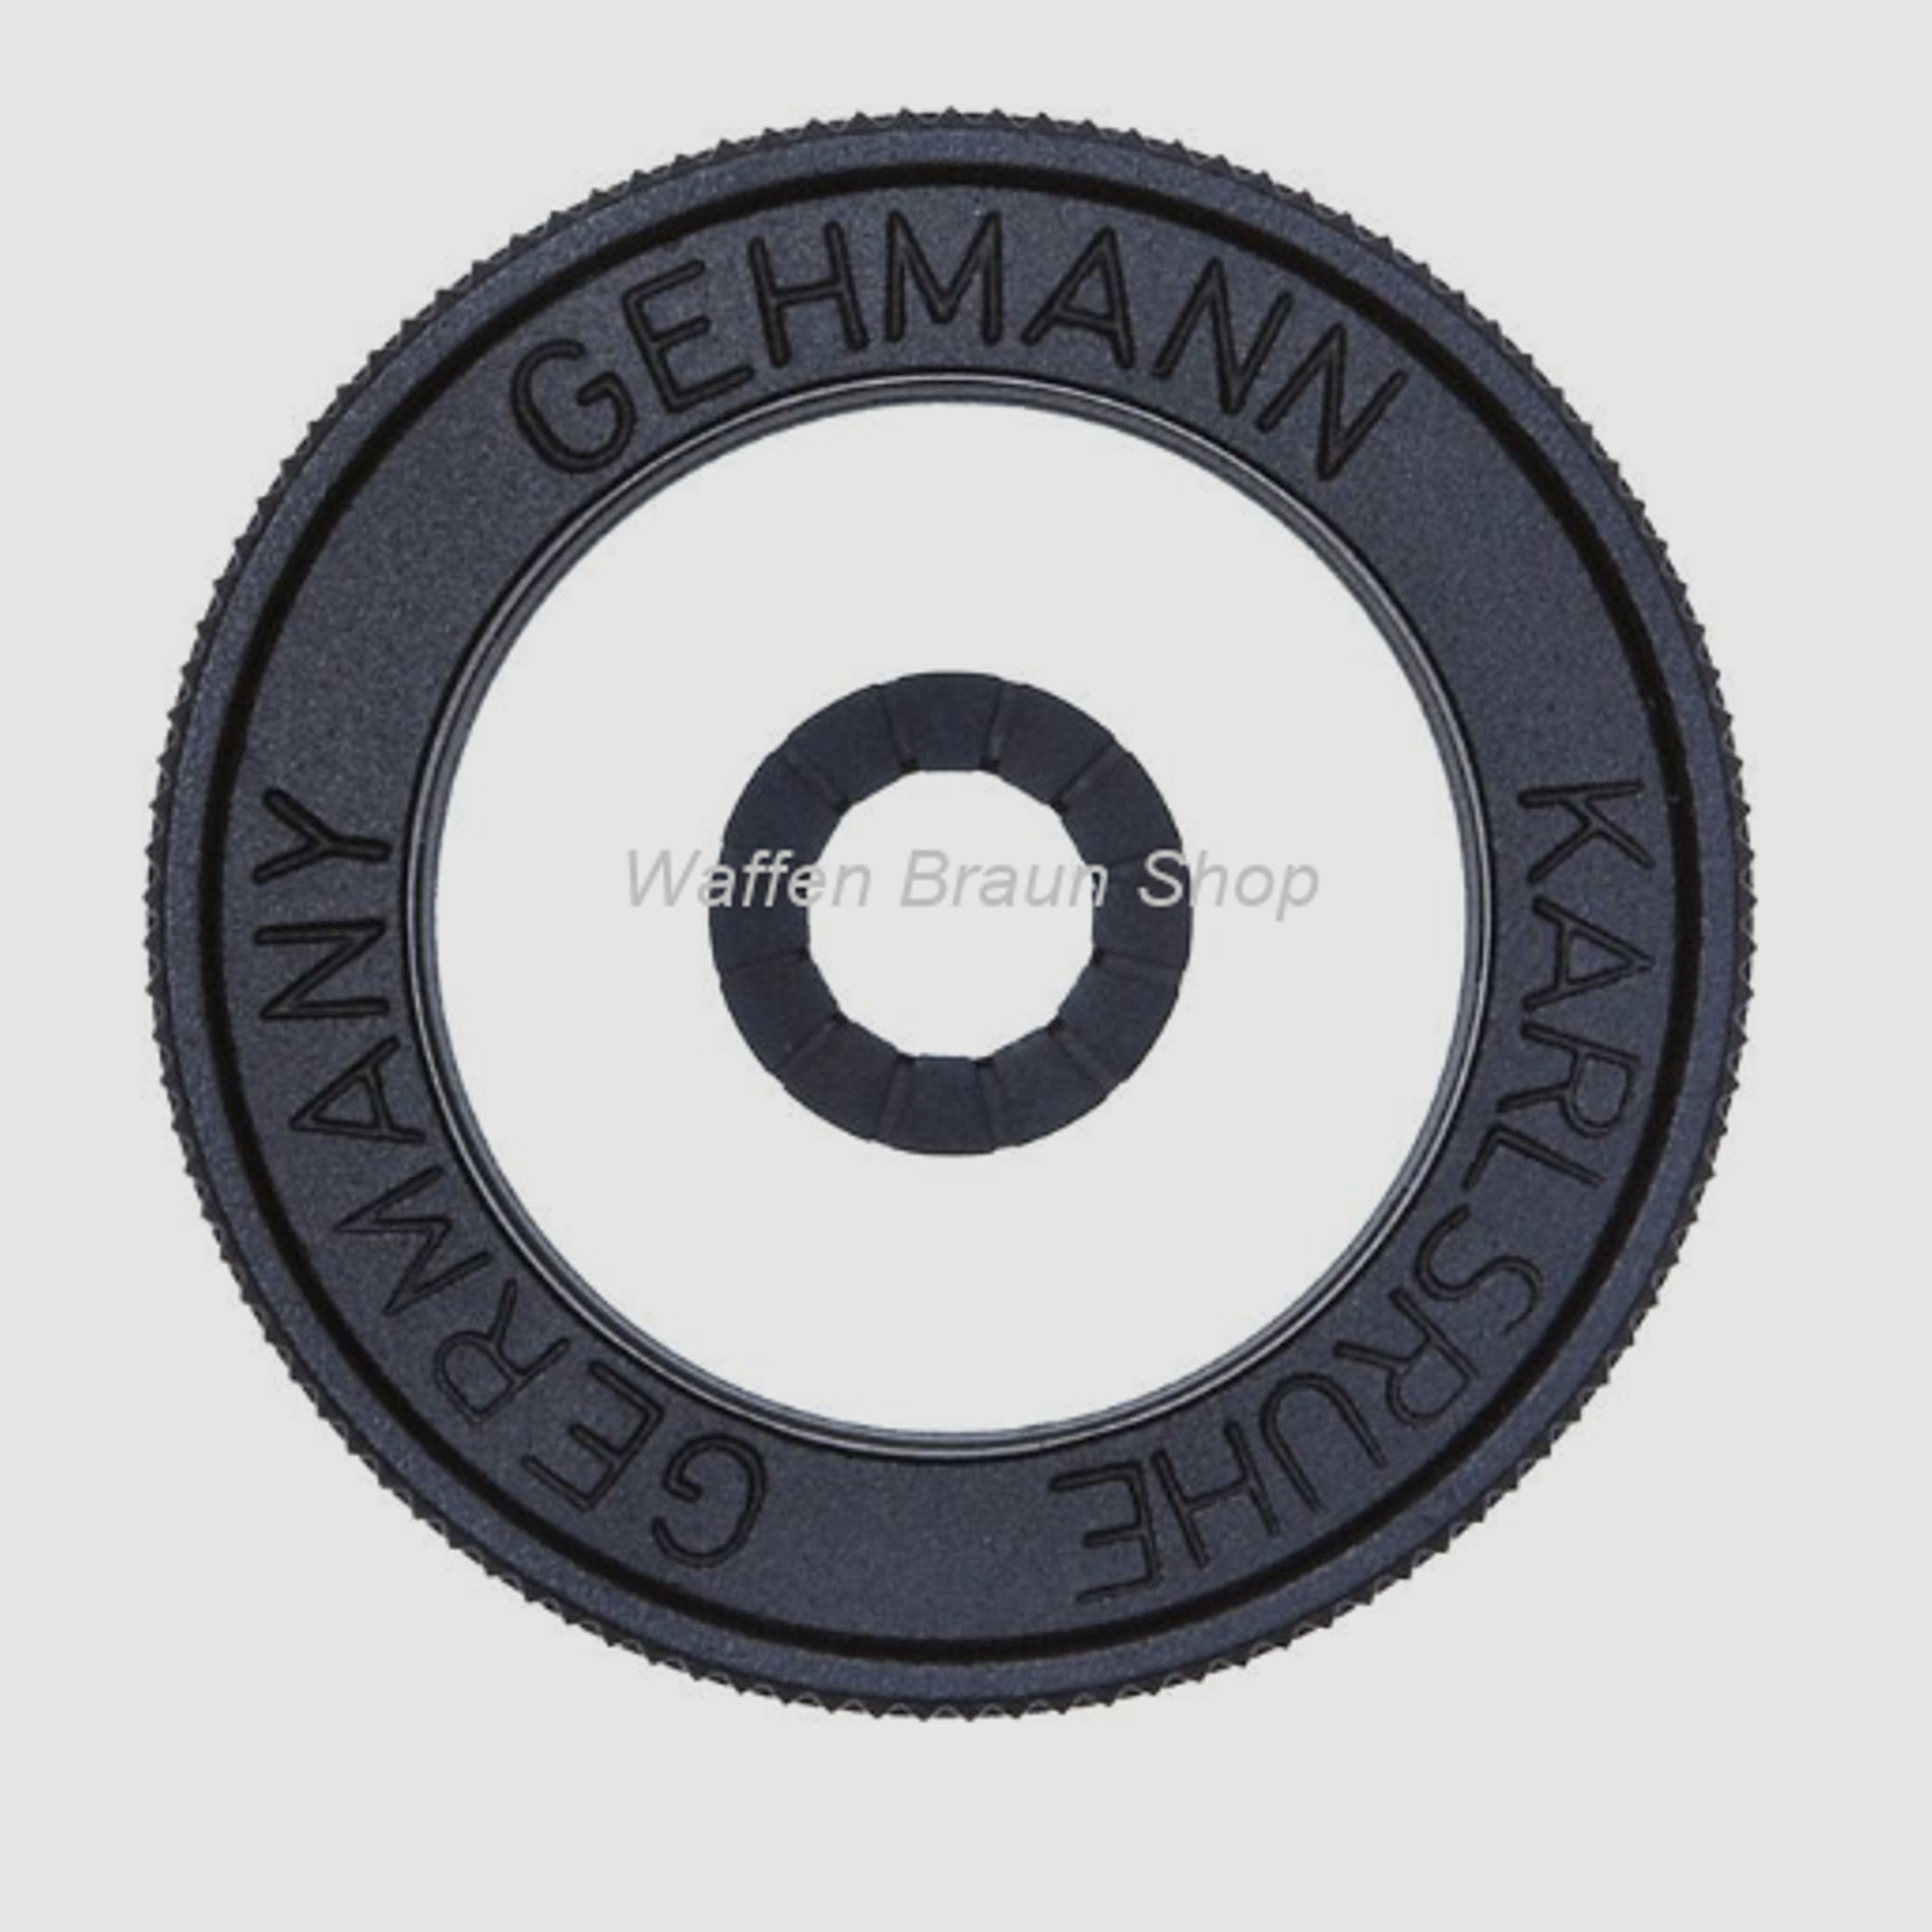 Gehmann Iris-Ringkorn M18 x 0,5 Verstellbereich von 4,0 - 6,0 mm